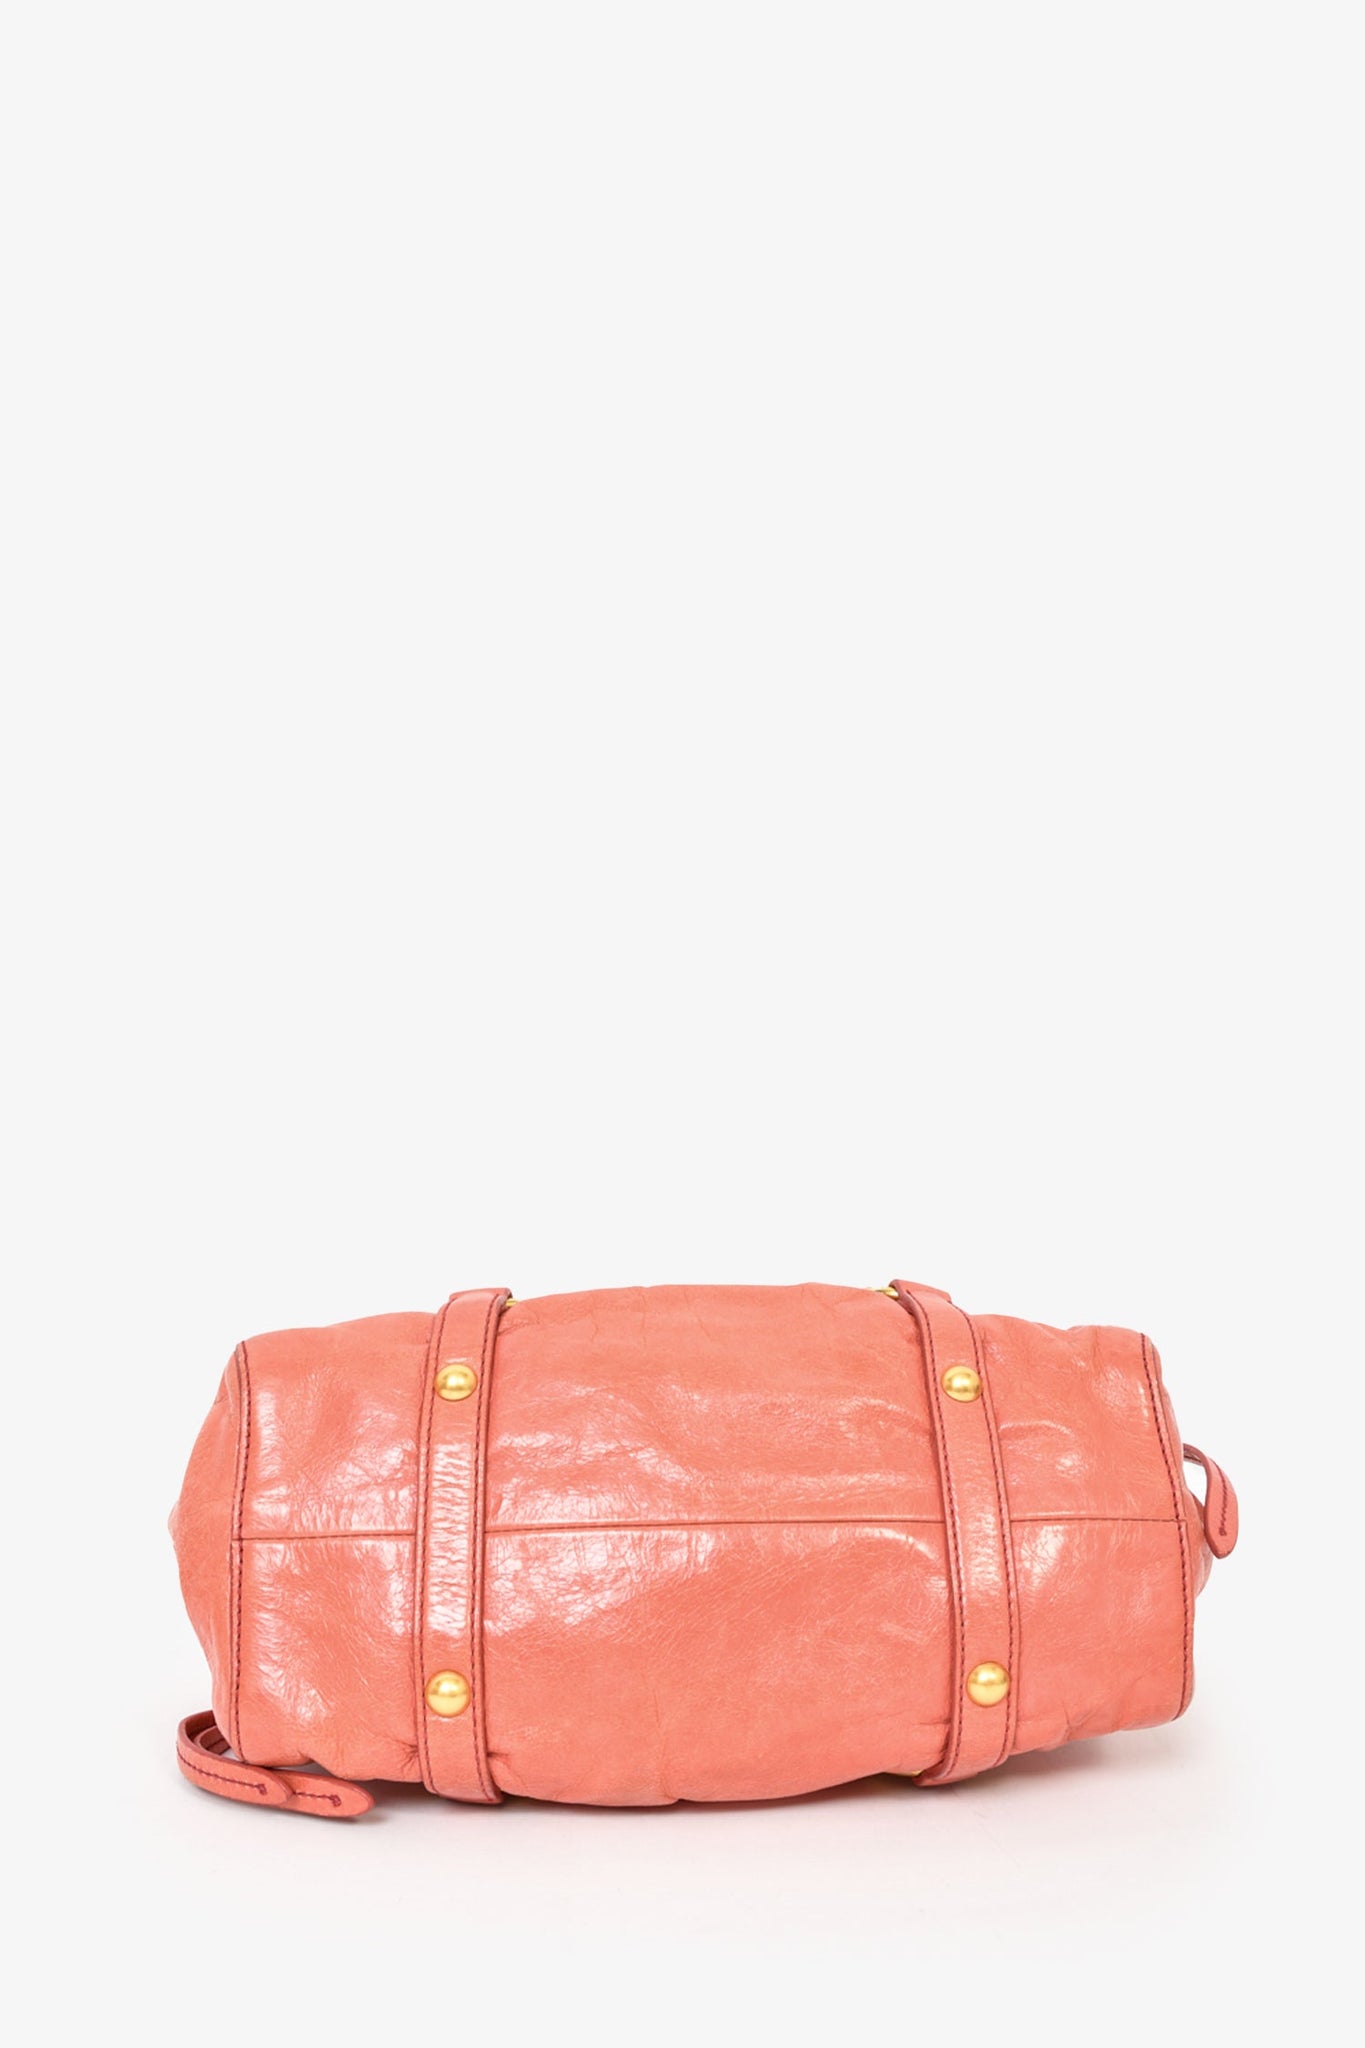 Miu Miu Pink Leather Mini Top Handle with Strap